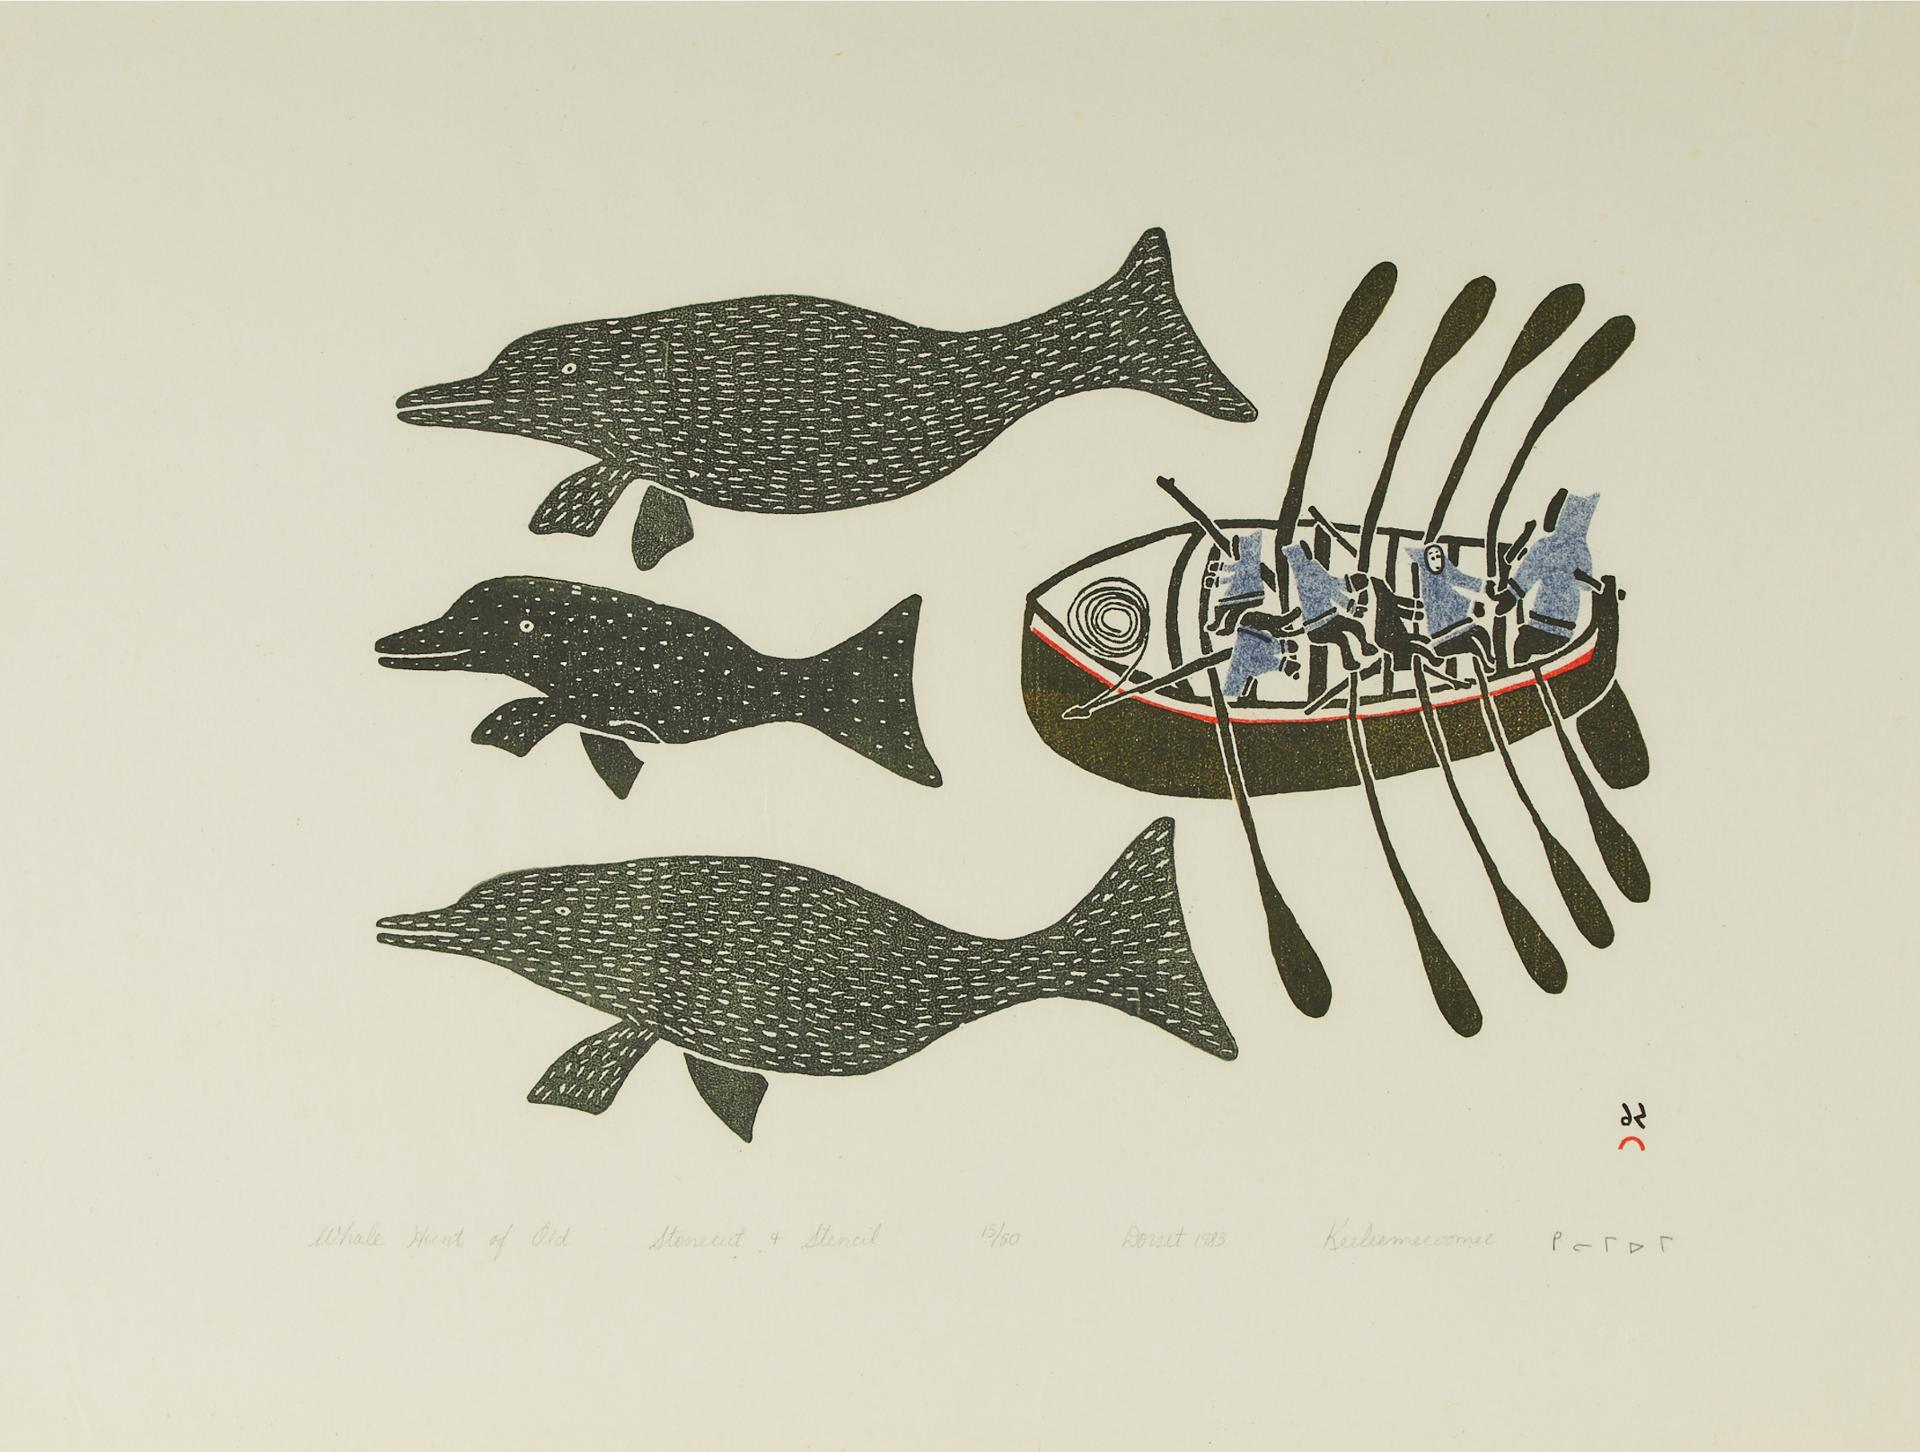 Keeleemeeoomee Samualie (1919-1983) - The Whale Hunt Of Old